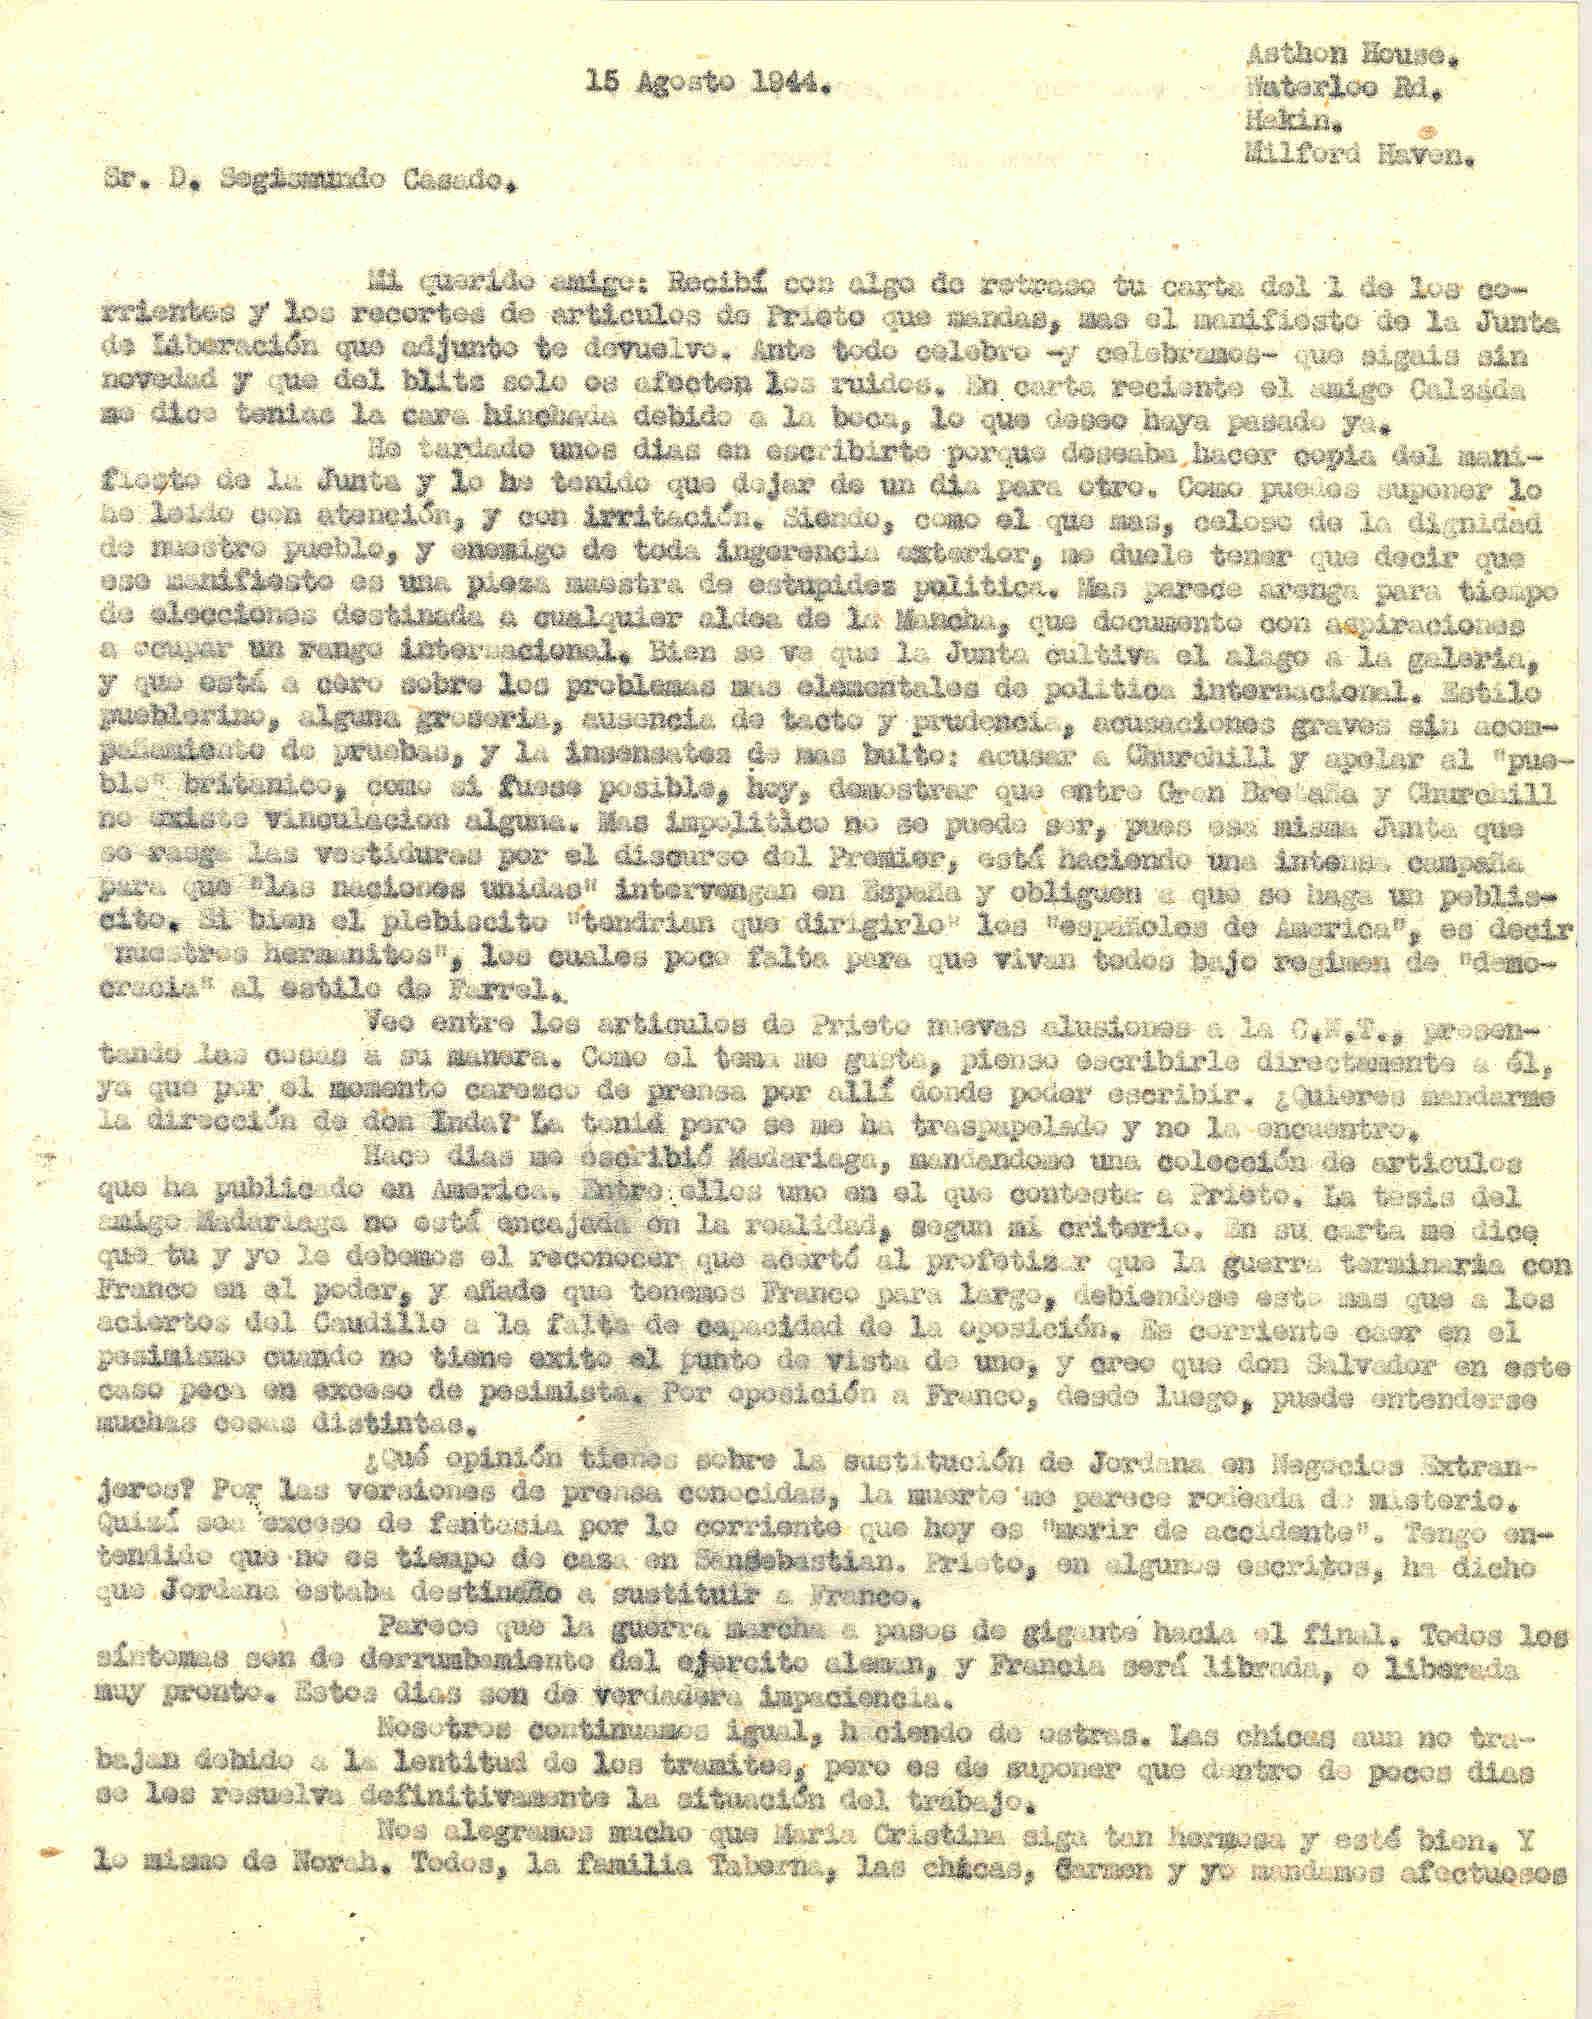 Carta a Segismundo Casado contando la falta de información de la Junta de Liberación respecto a política internacional y de artículos de Madariaga.